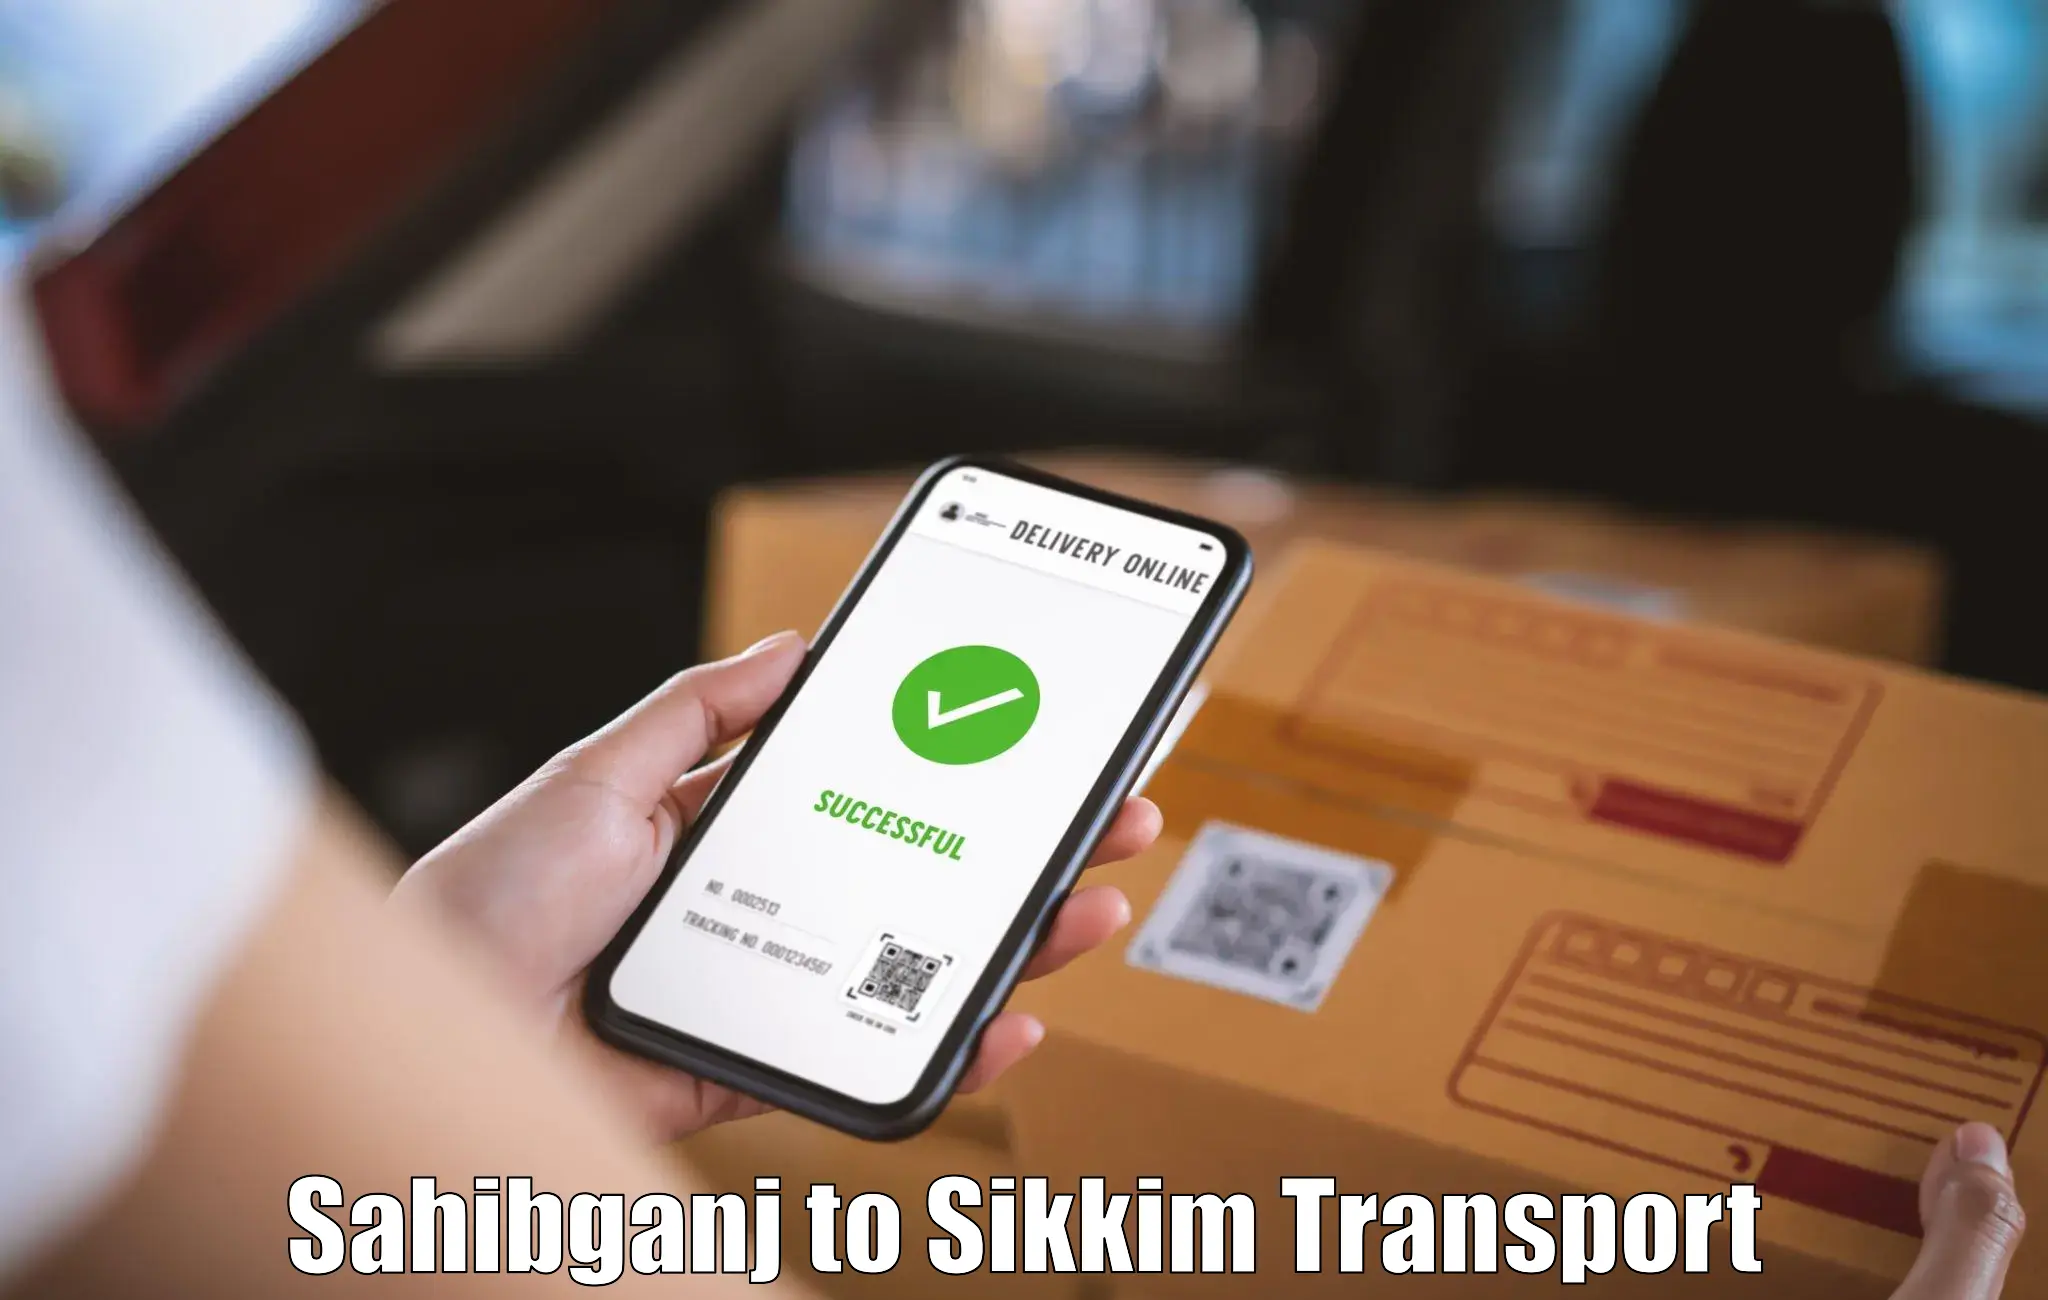 Air freight transport services Sahibganj to Rangpo